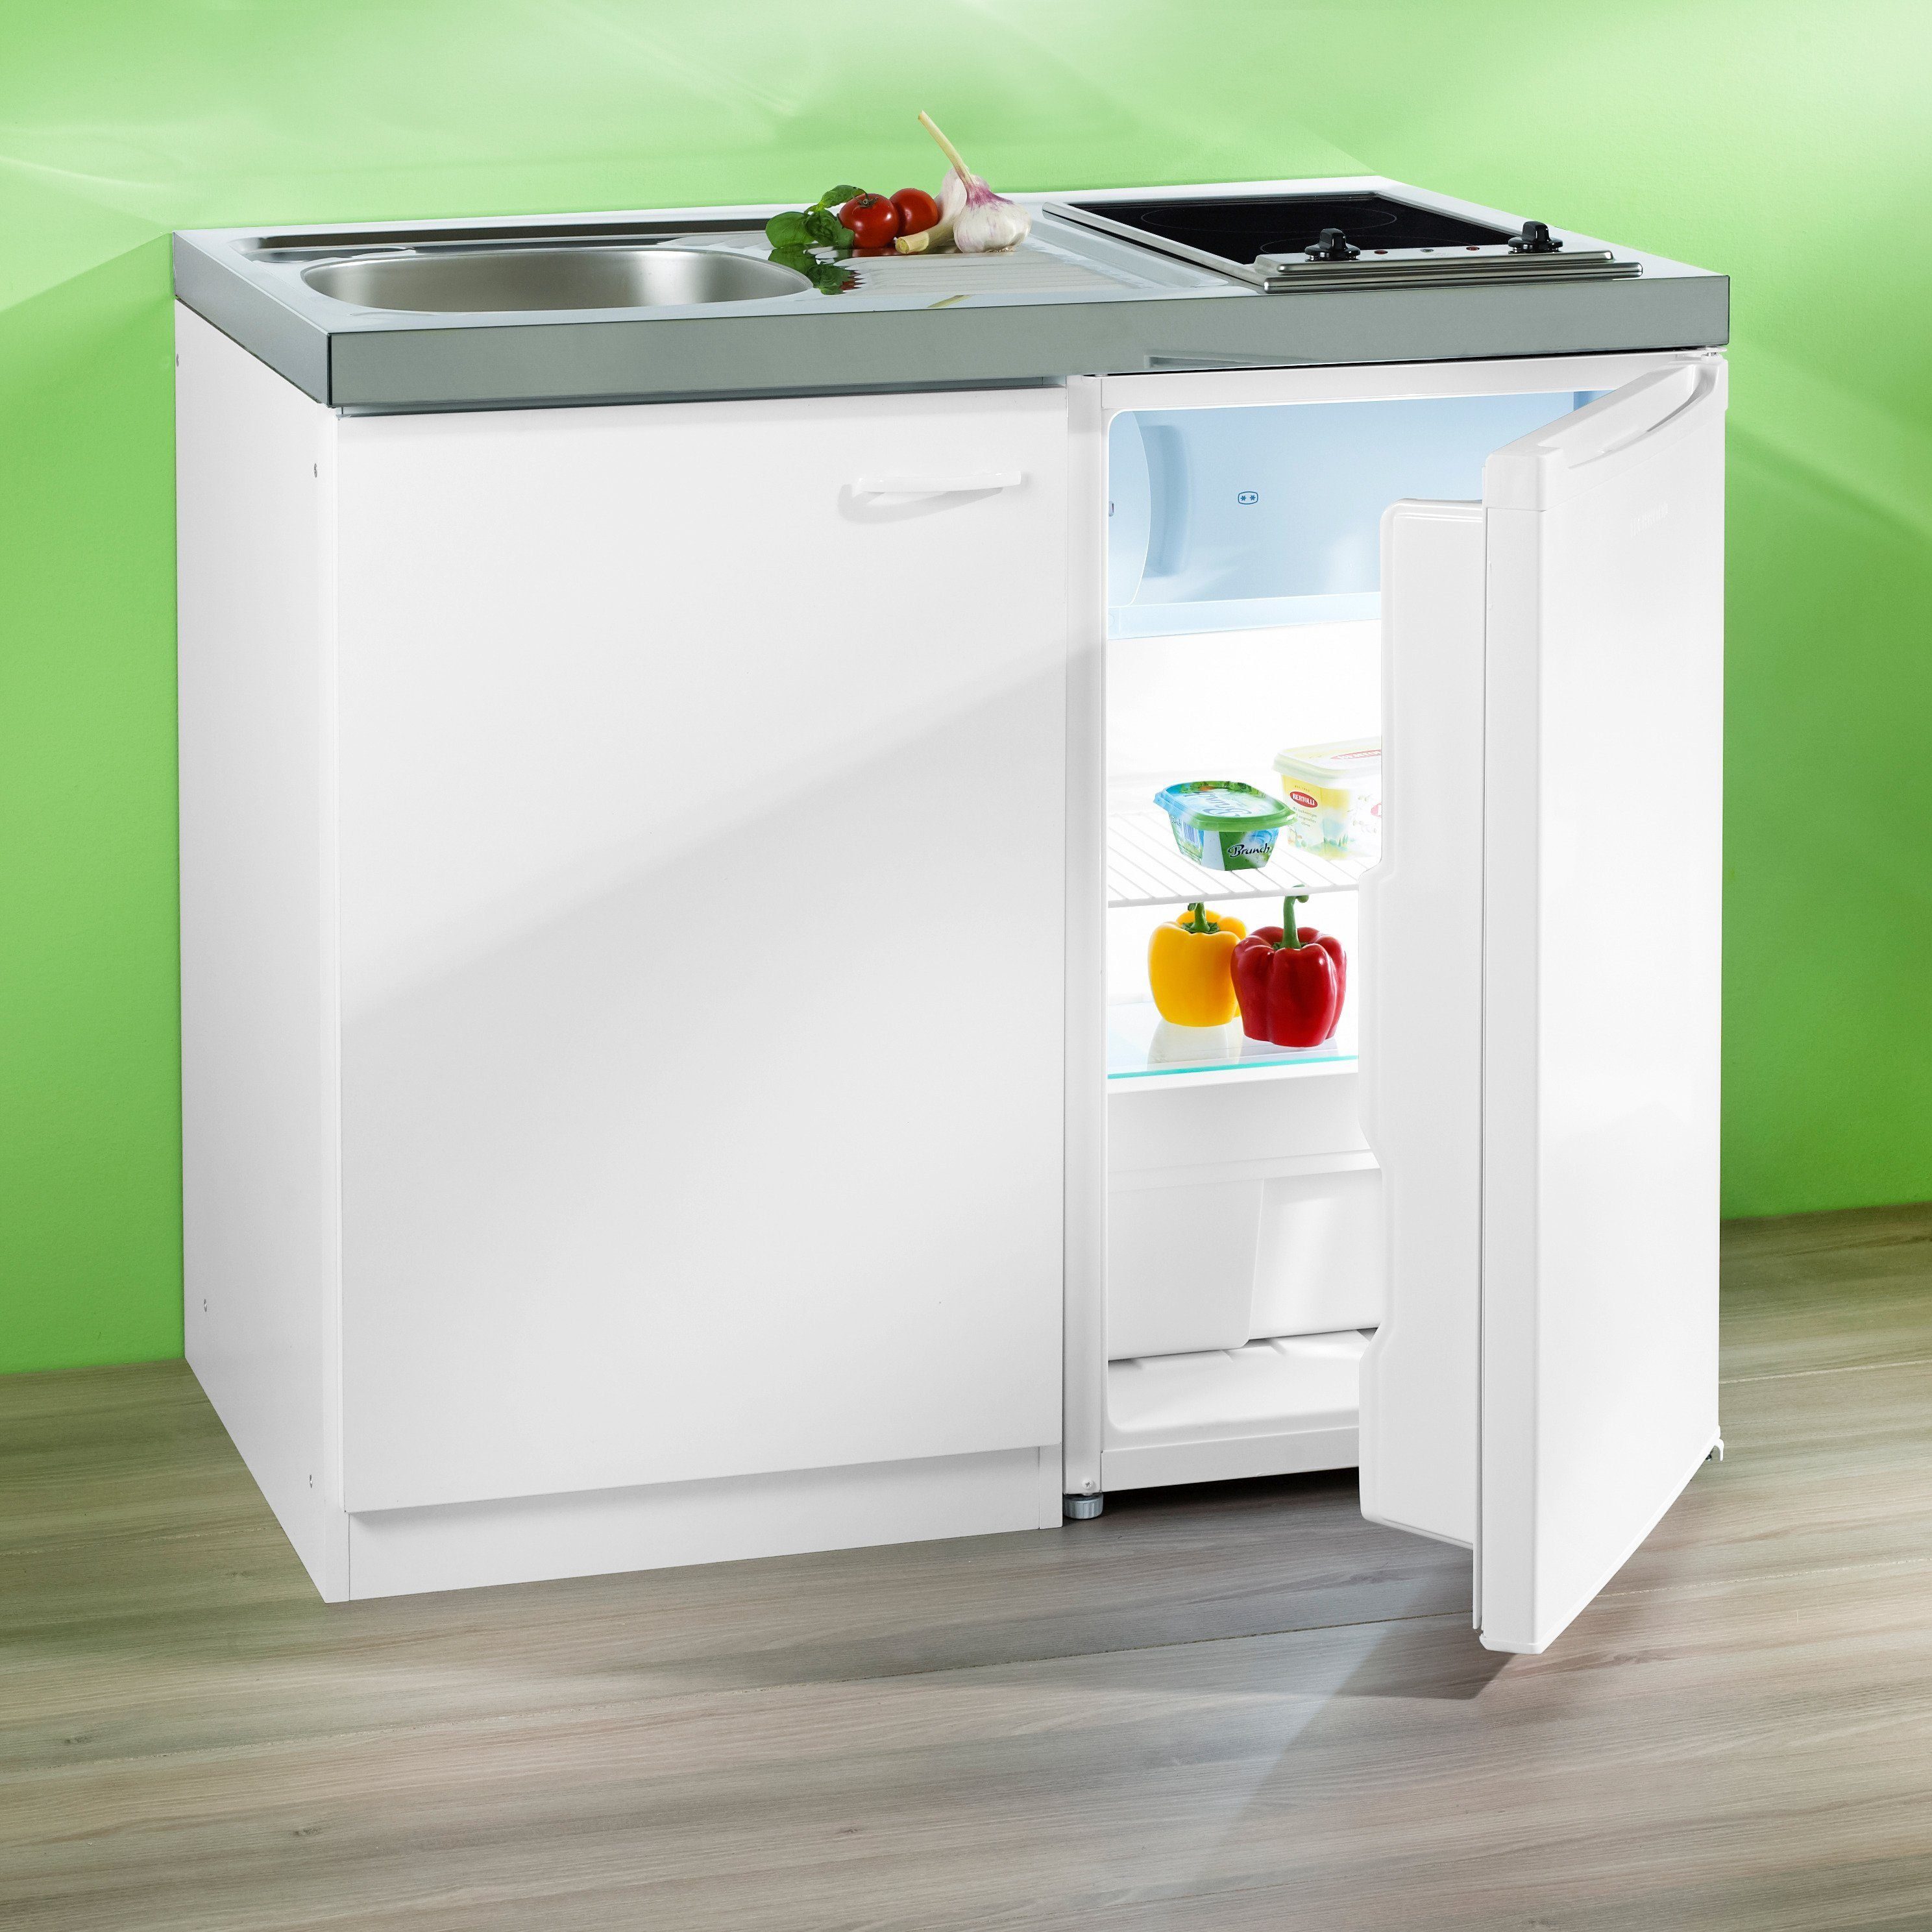 RESPEKTA Miniküche Büren aus der Serie Levibn mit Glaskeramik-Kochfeld und  Kühlschrank